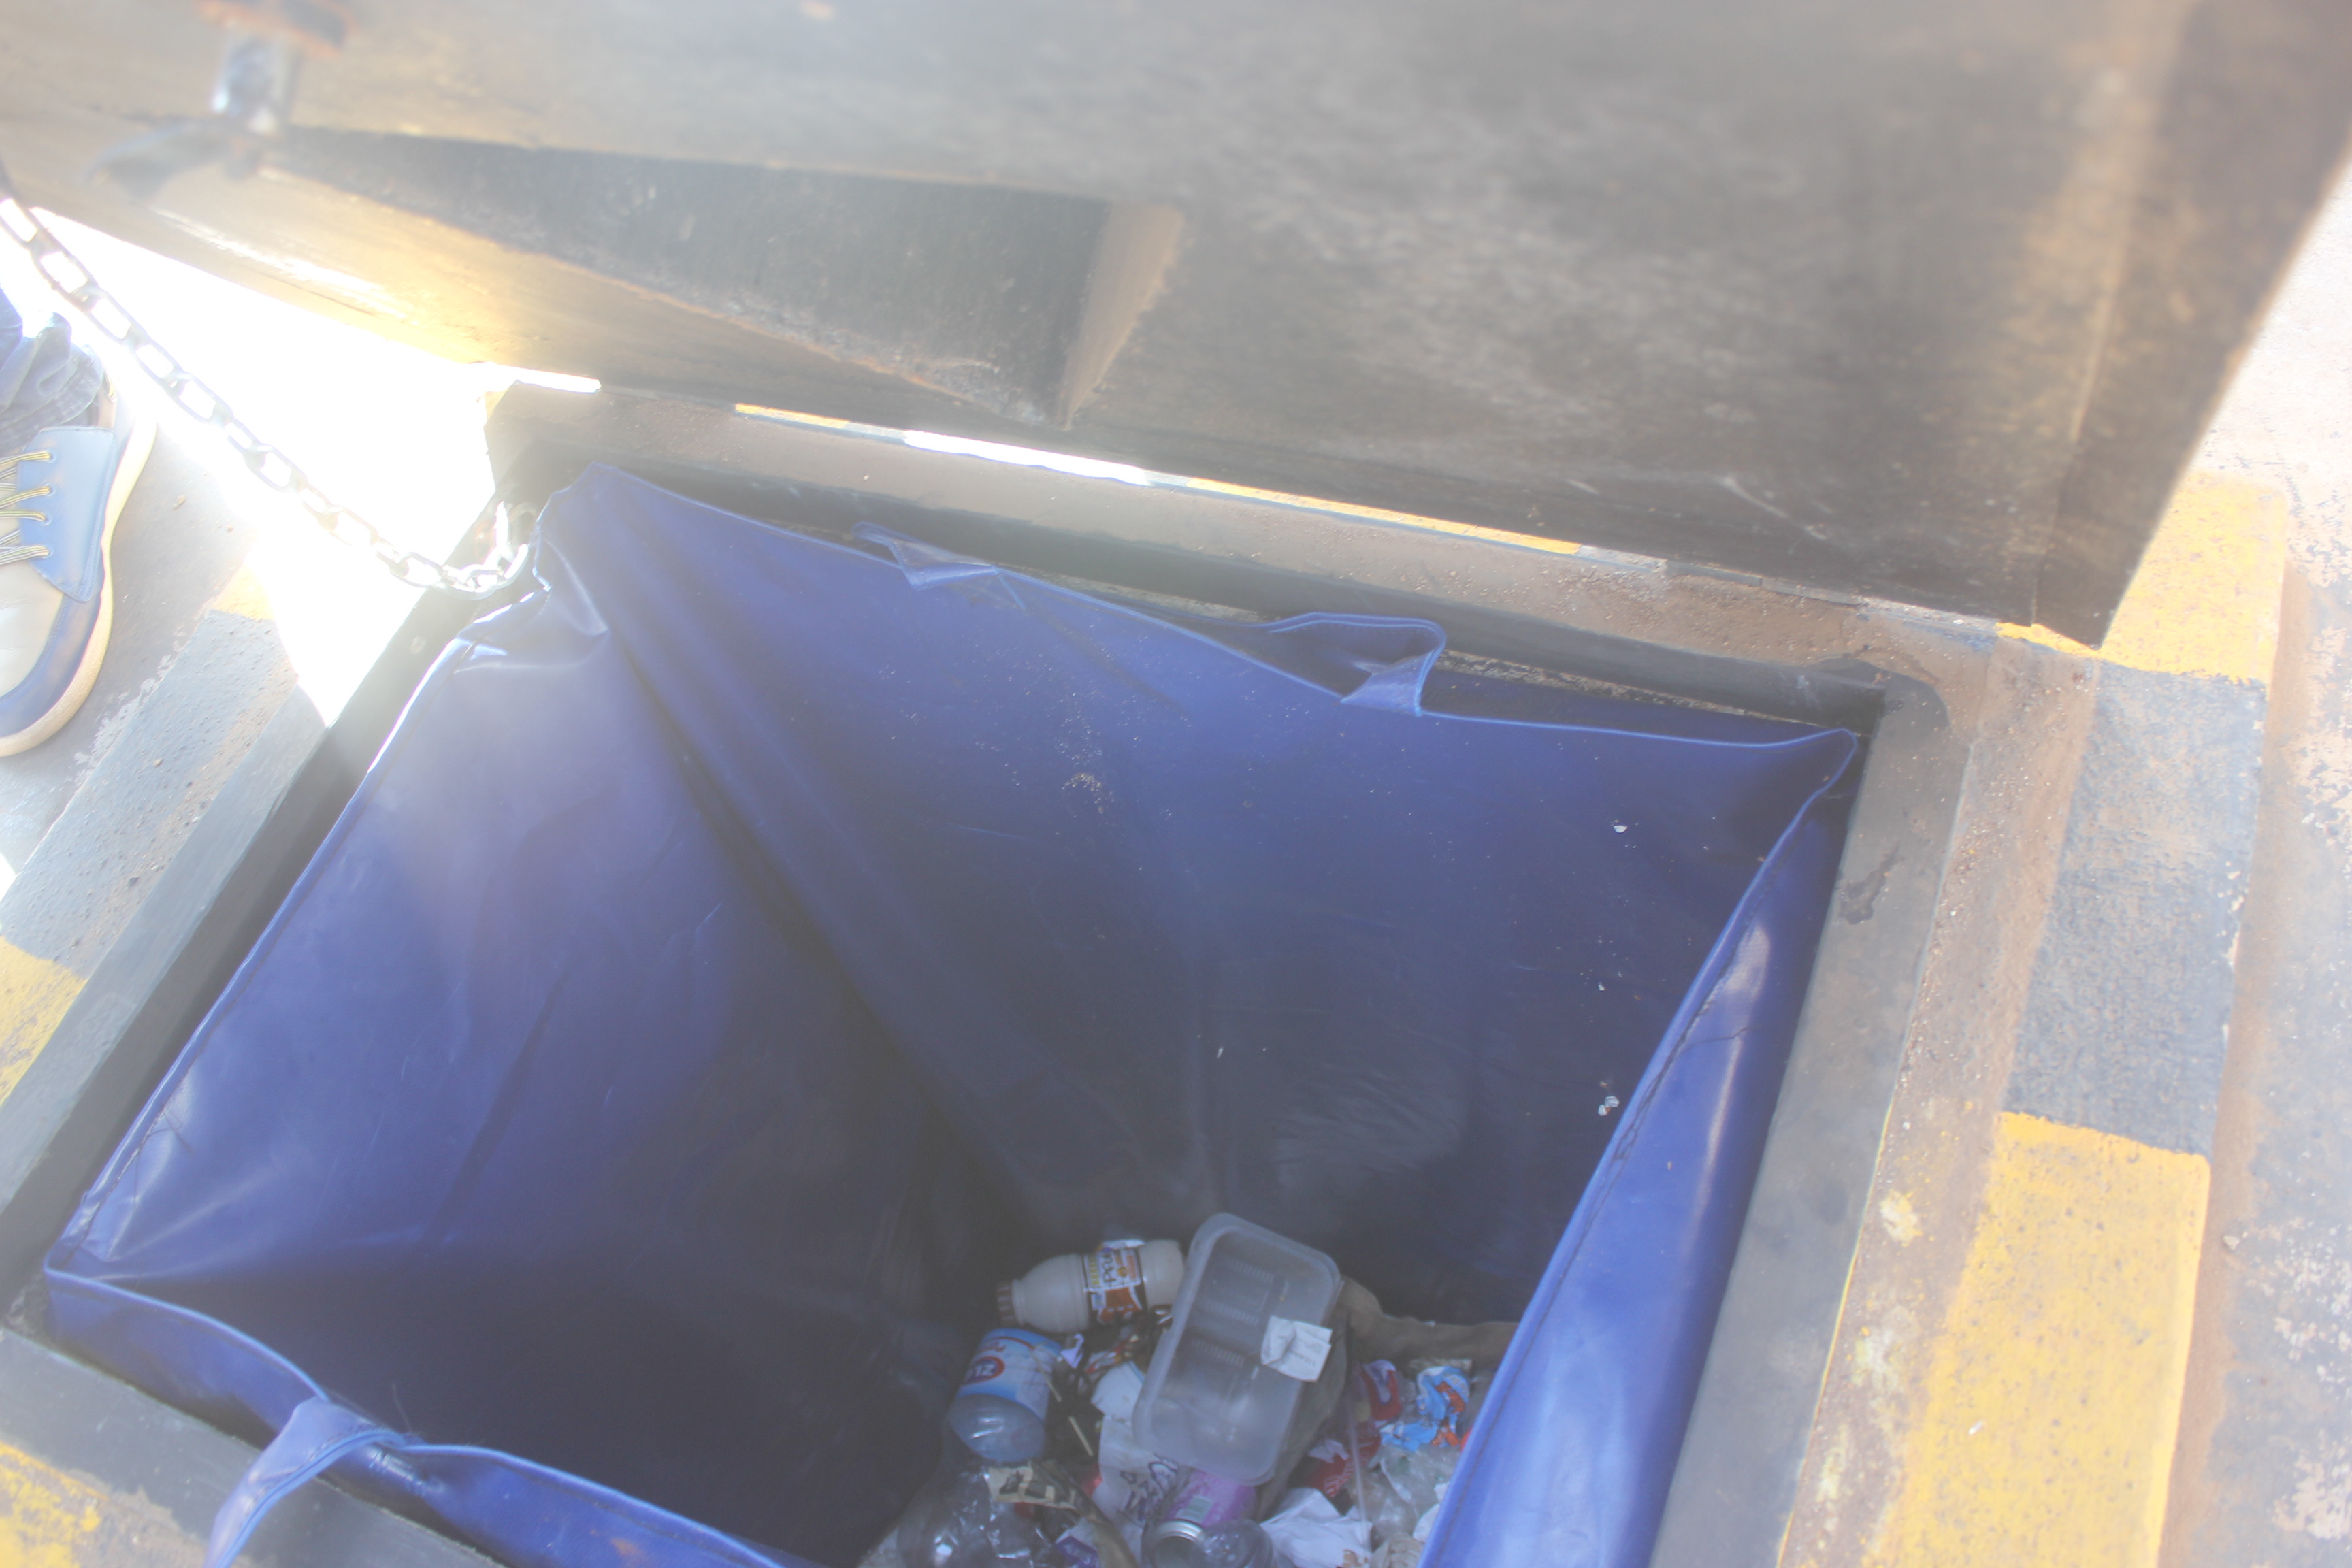 Rubbish in an opened underground bin